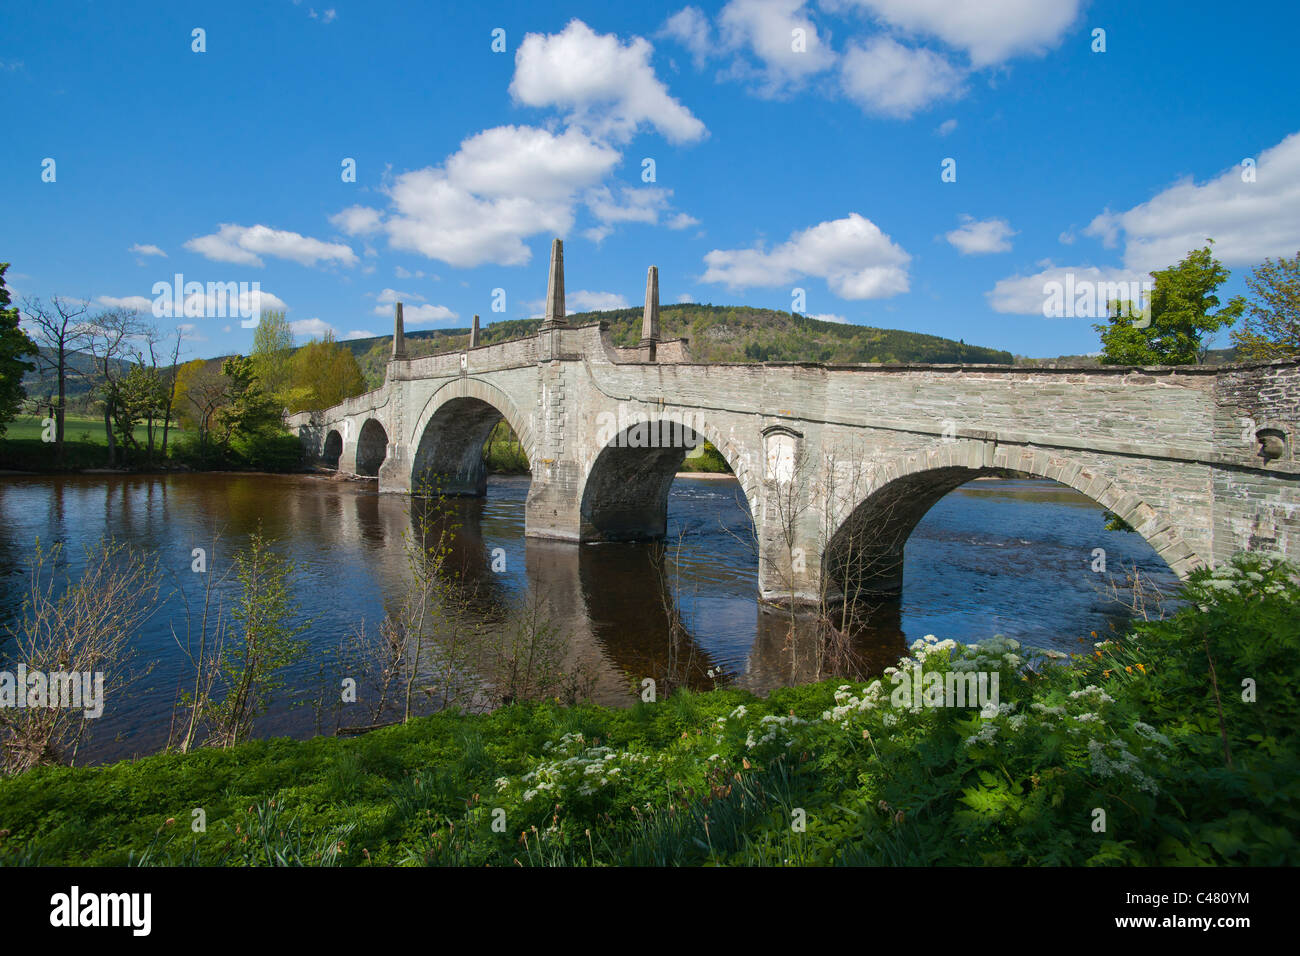 Wade's Bridge, rivière Tay, Aberfeldy, Perthshire, Écosse, Royaume-Uni Banque D'Images